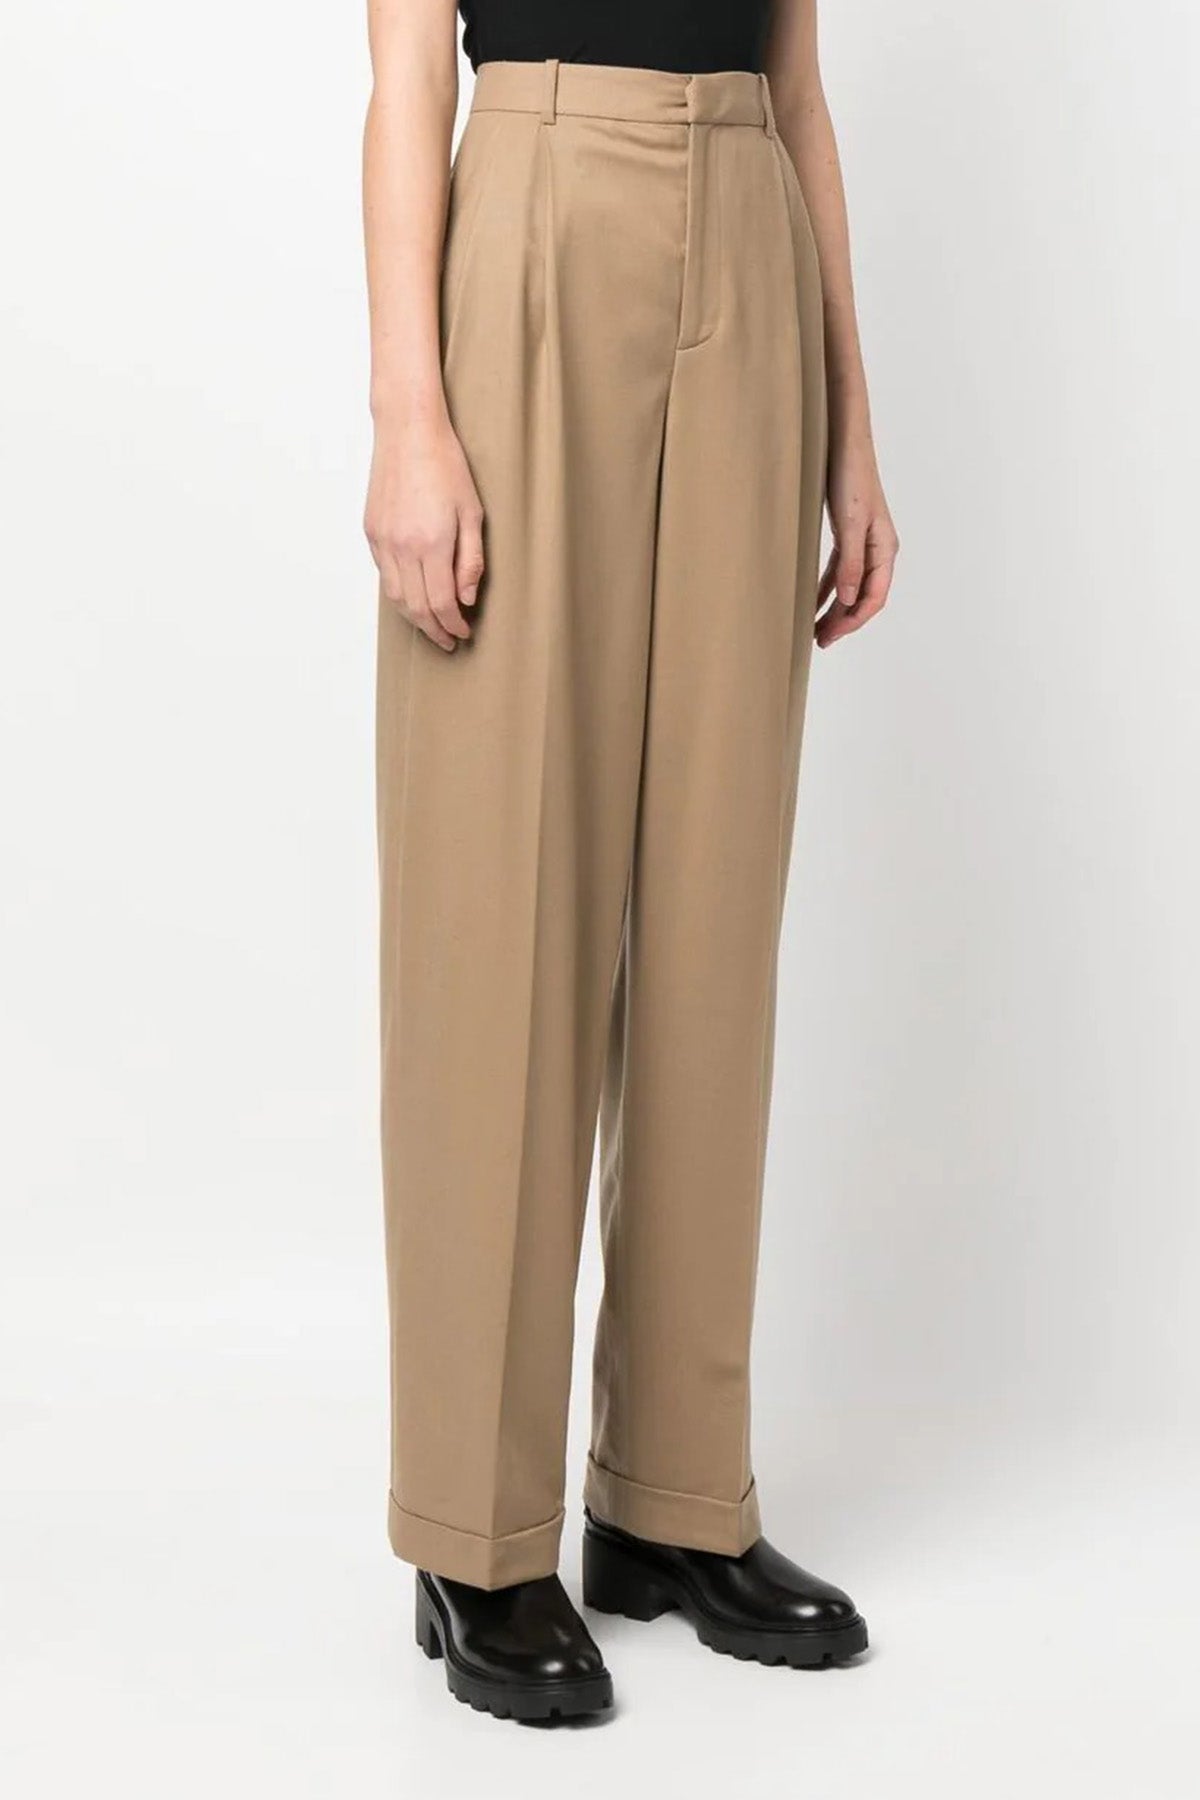 Polo Ralph Lauren Çift Pileli Streç Yün Pantolon-Libas Trendy Fashion Store